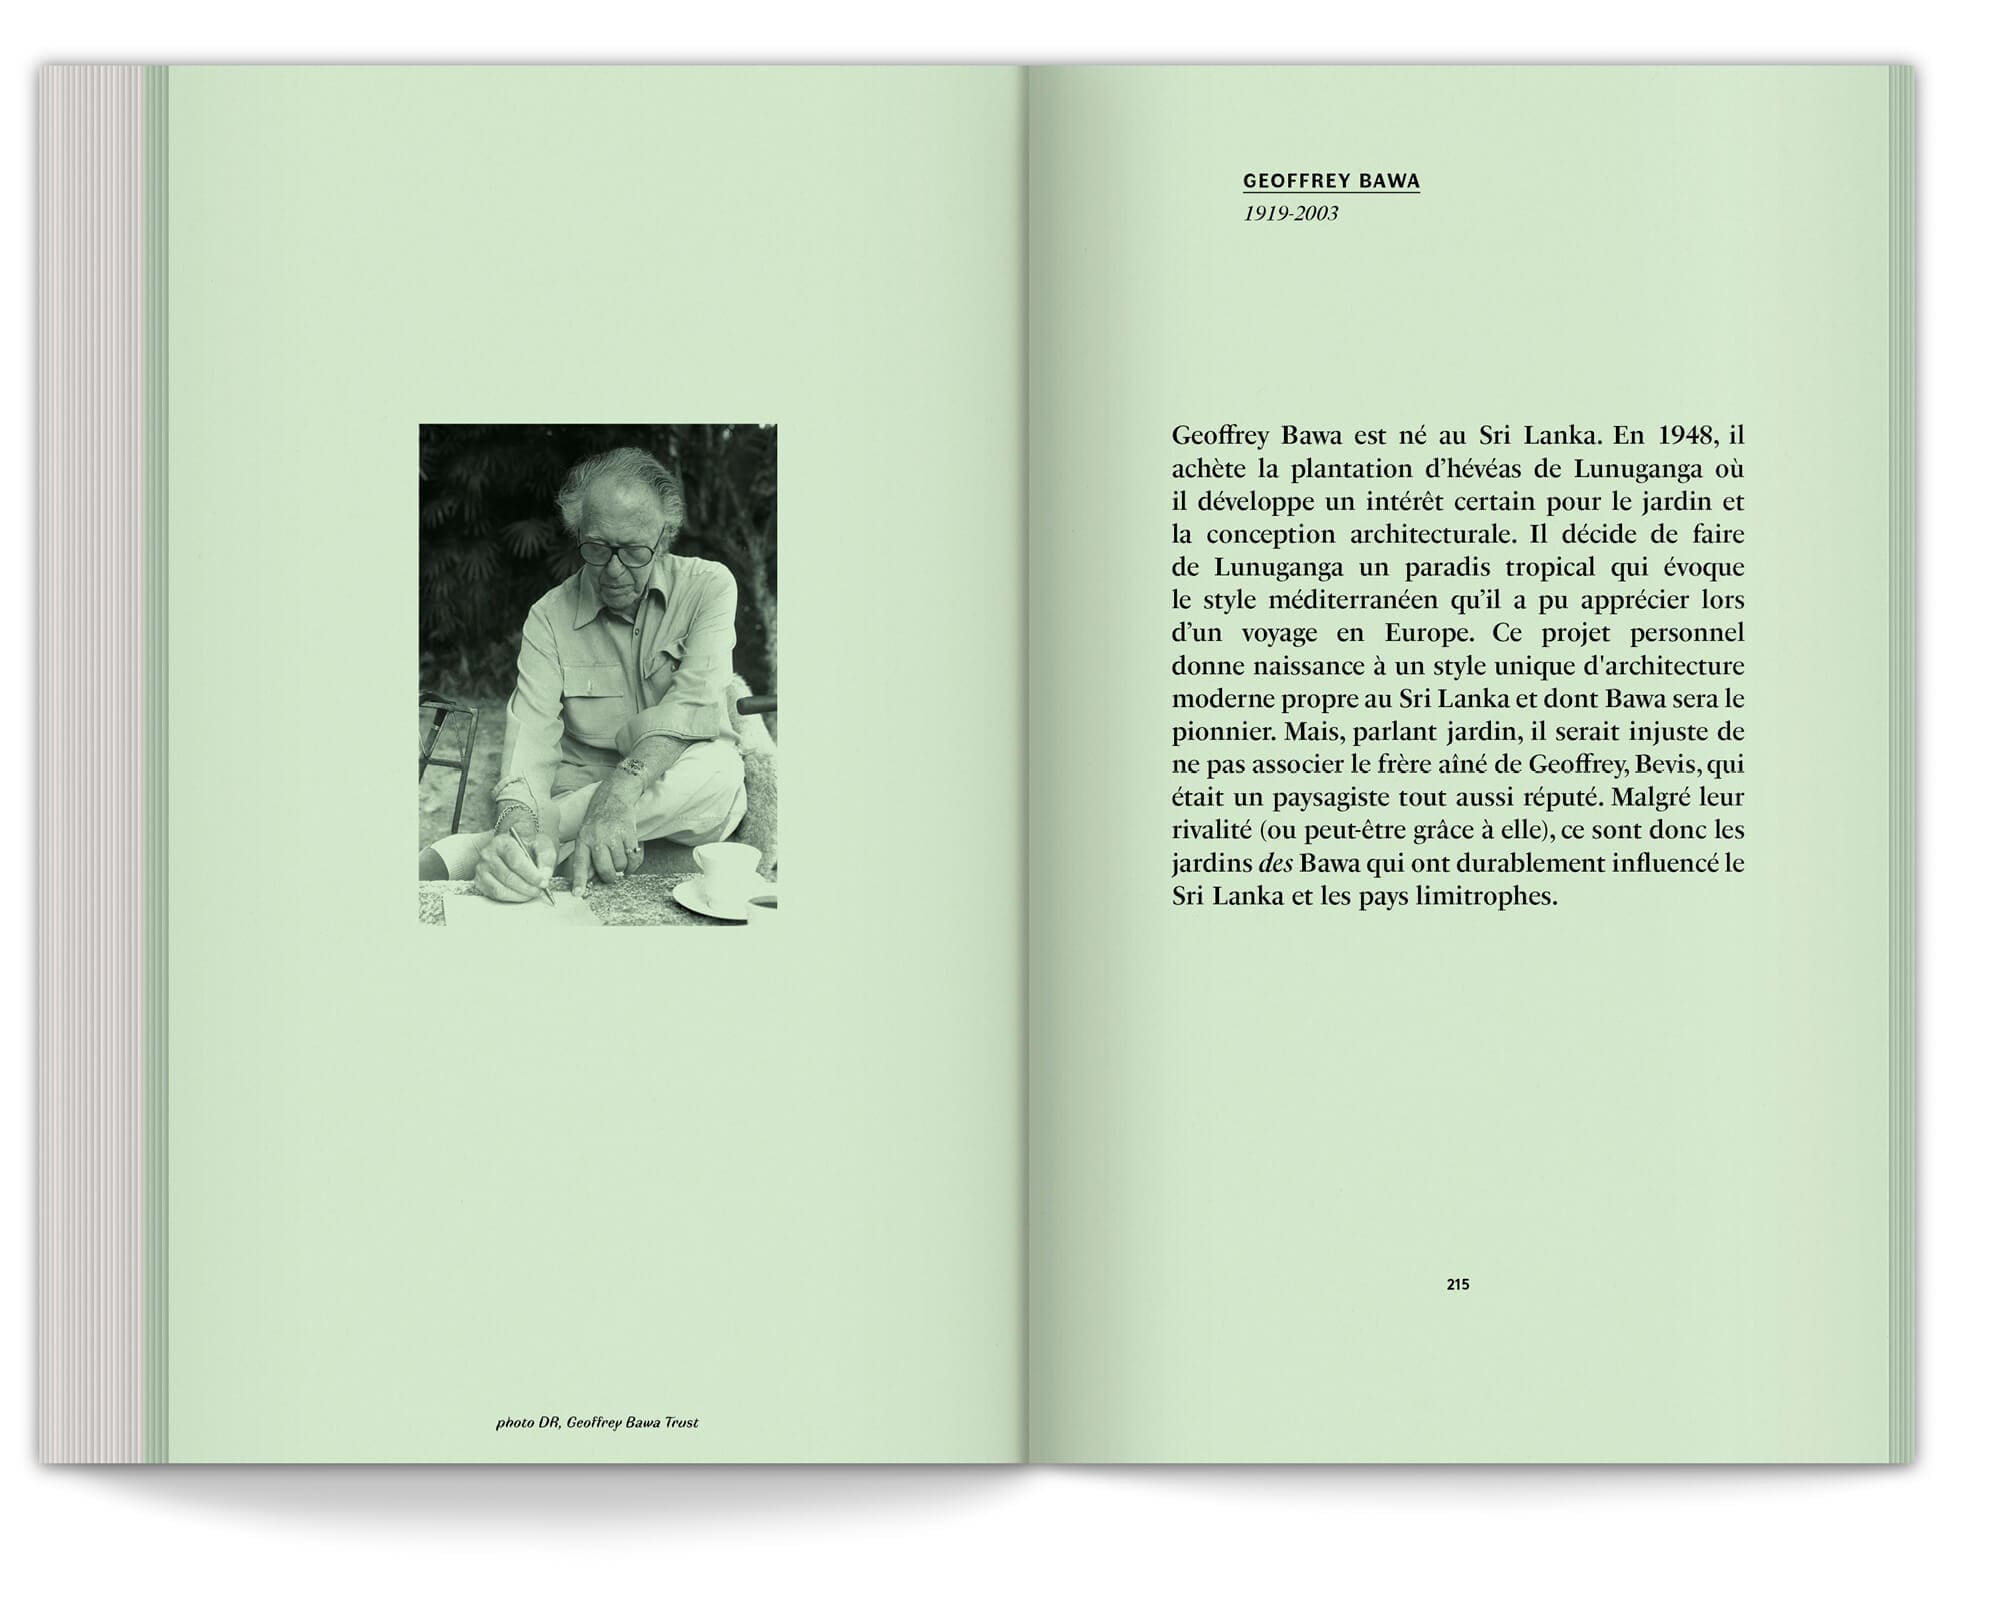 Geoffrey Bawa dans les annexes du livre écrit par le duo de paysagistes Ossart + Maurières, design graphique IchetKar